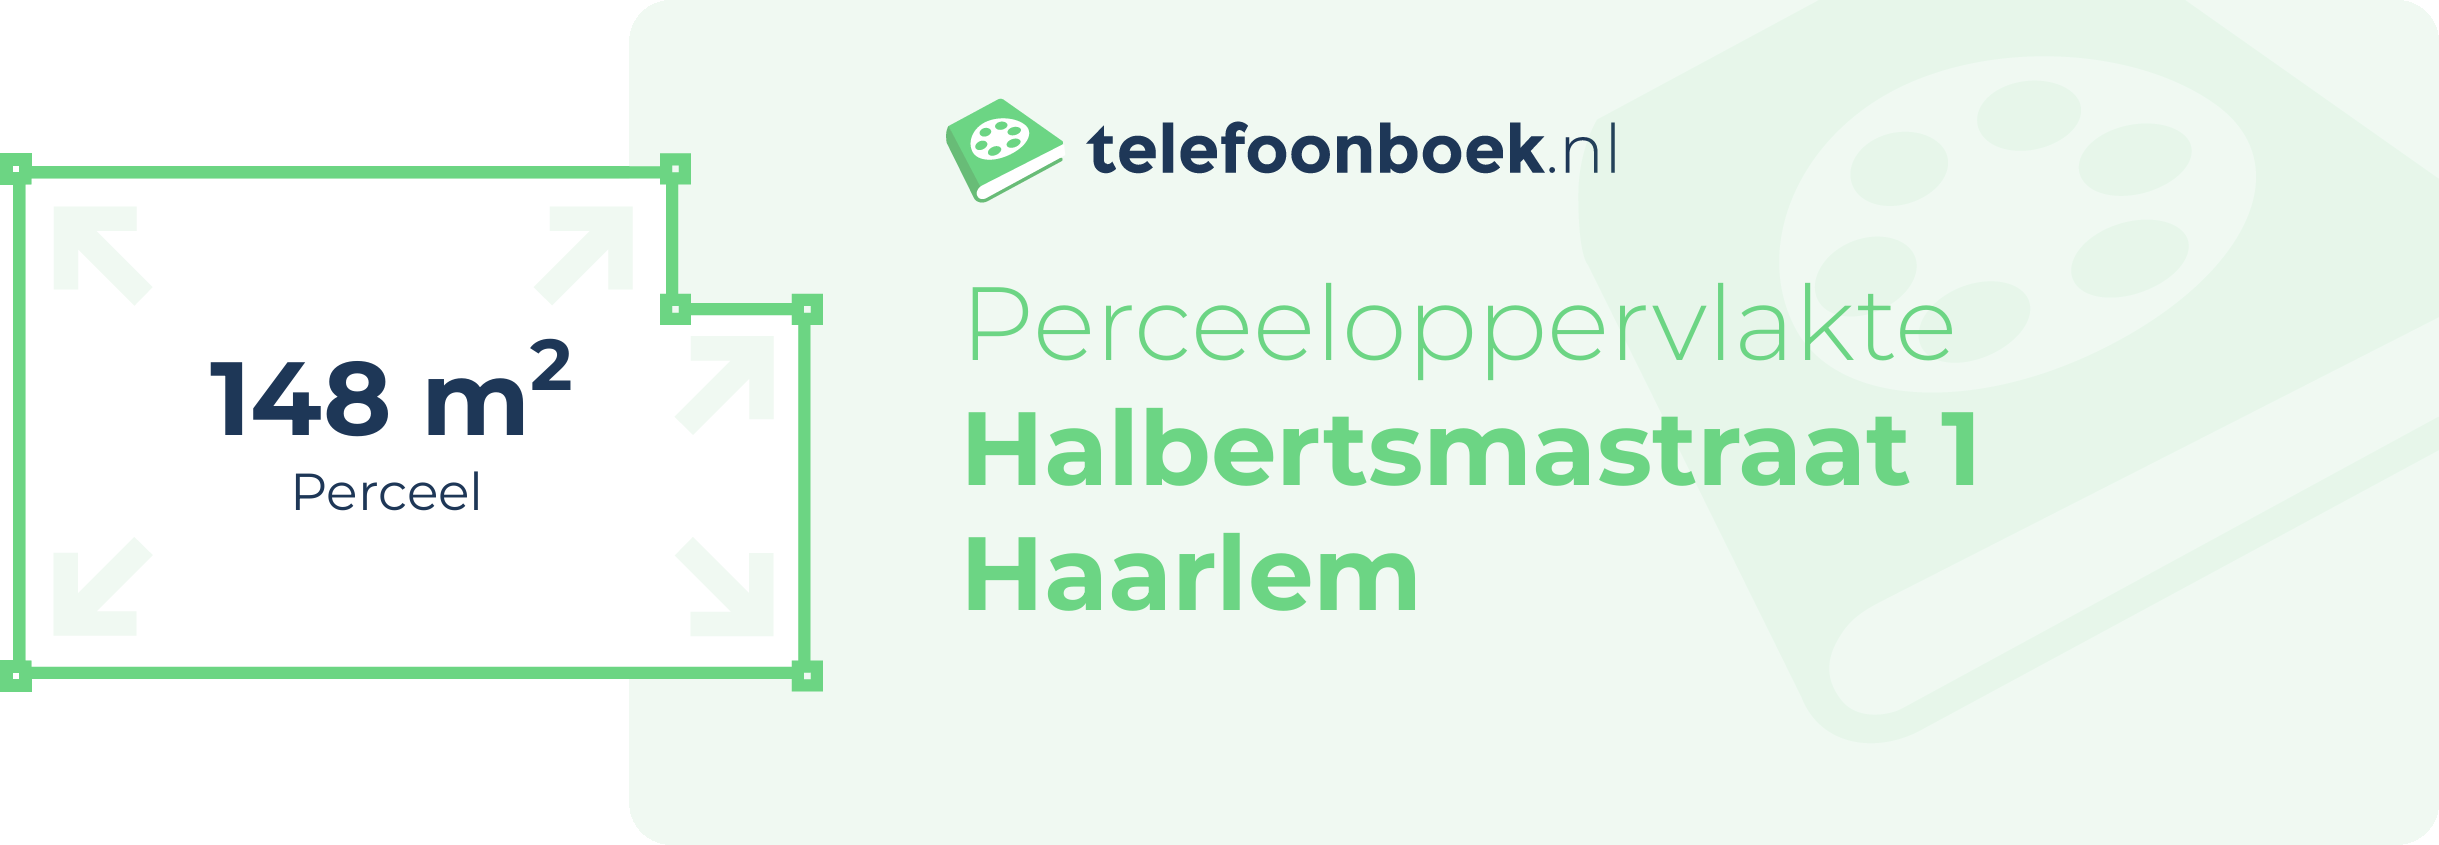 Perceeloppervlakte Halbertsmastraat 1 Haarlem